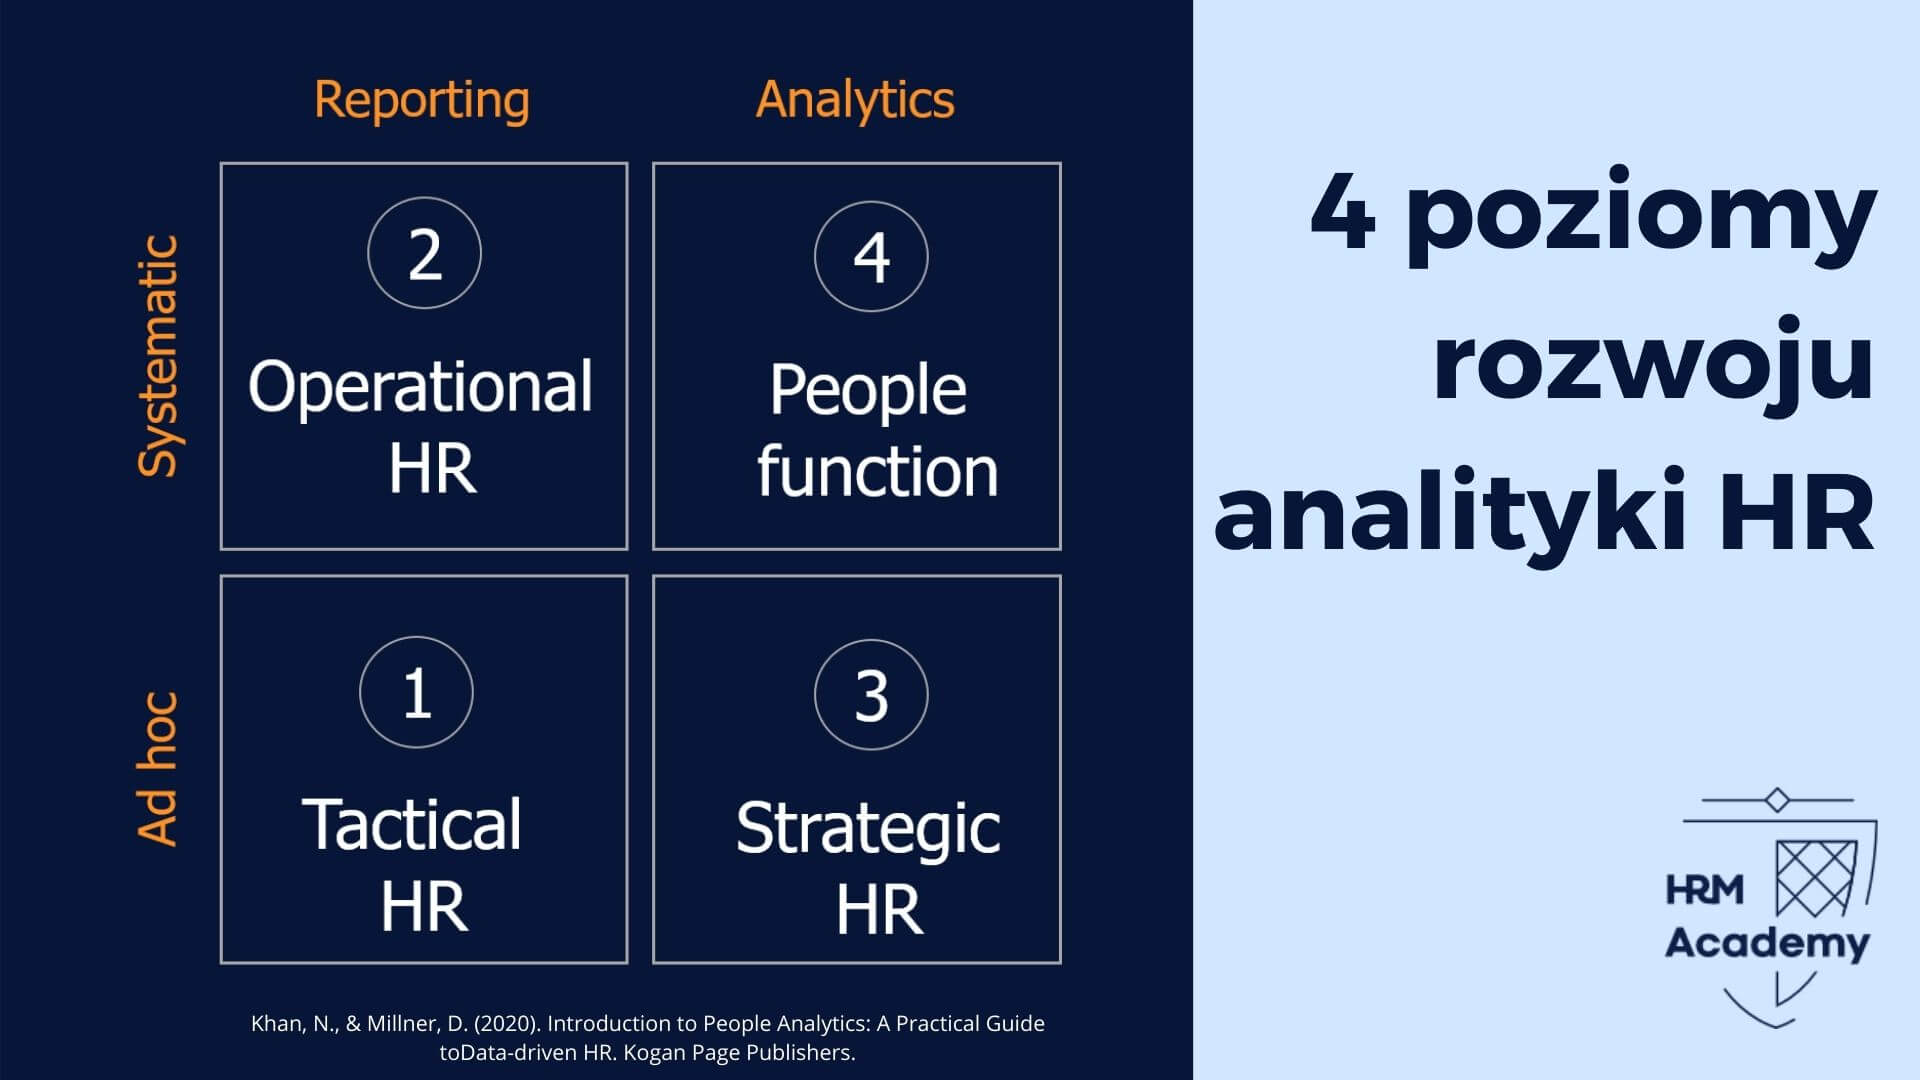 4 Poziomy rozwoju analityki w dziale HR